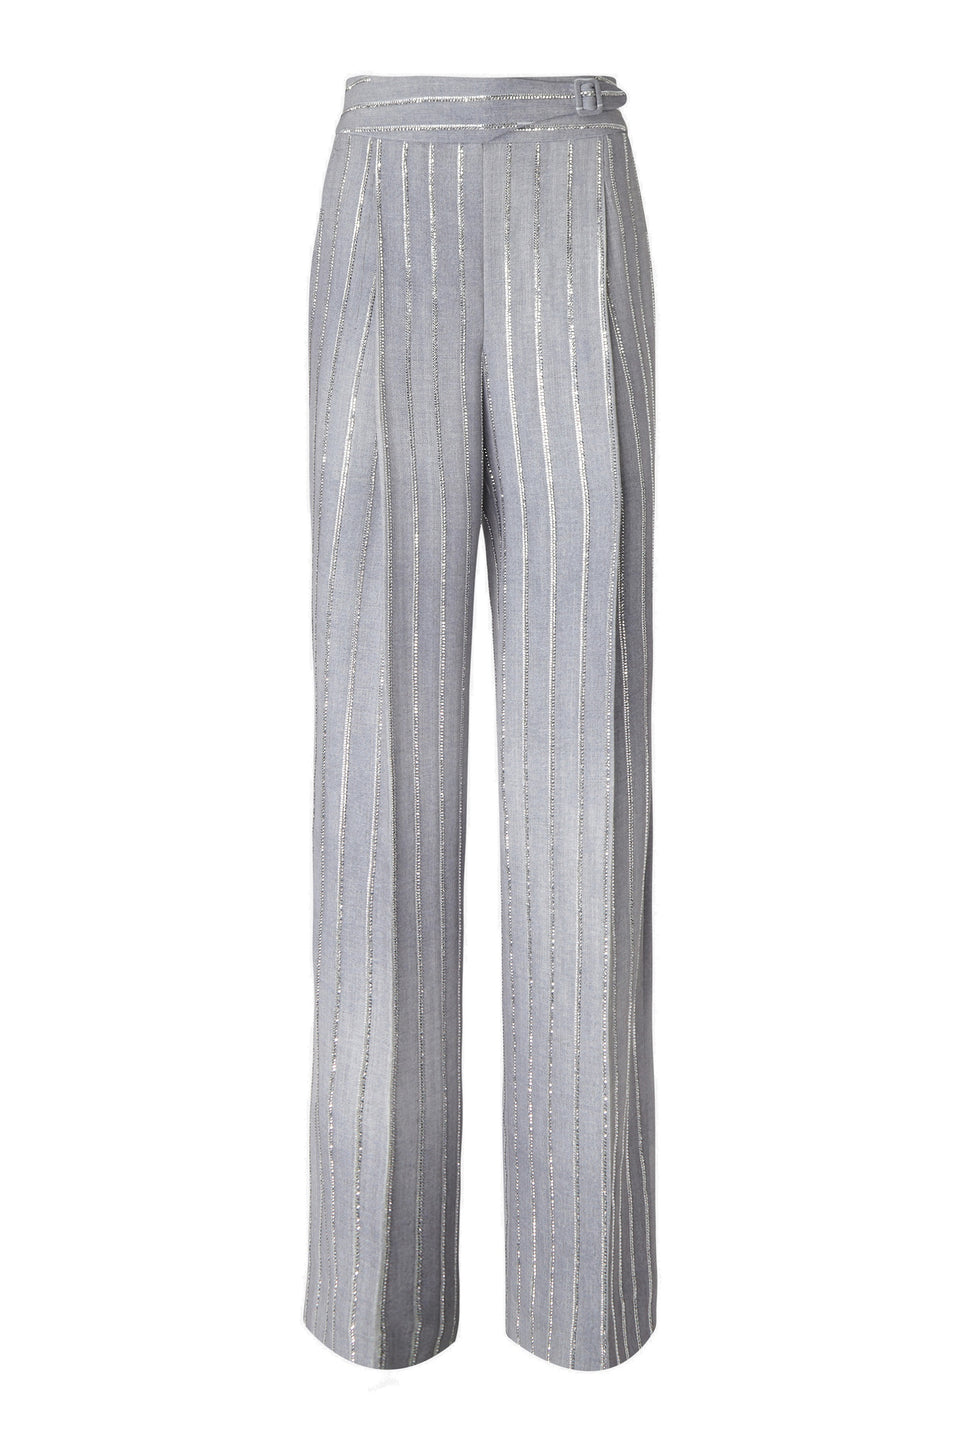 Pantalone sartoriale in tessuto grigio